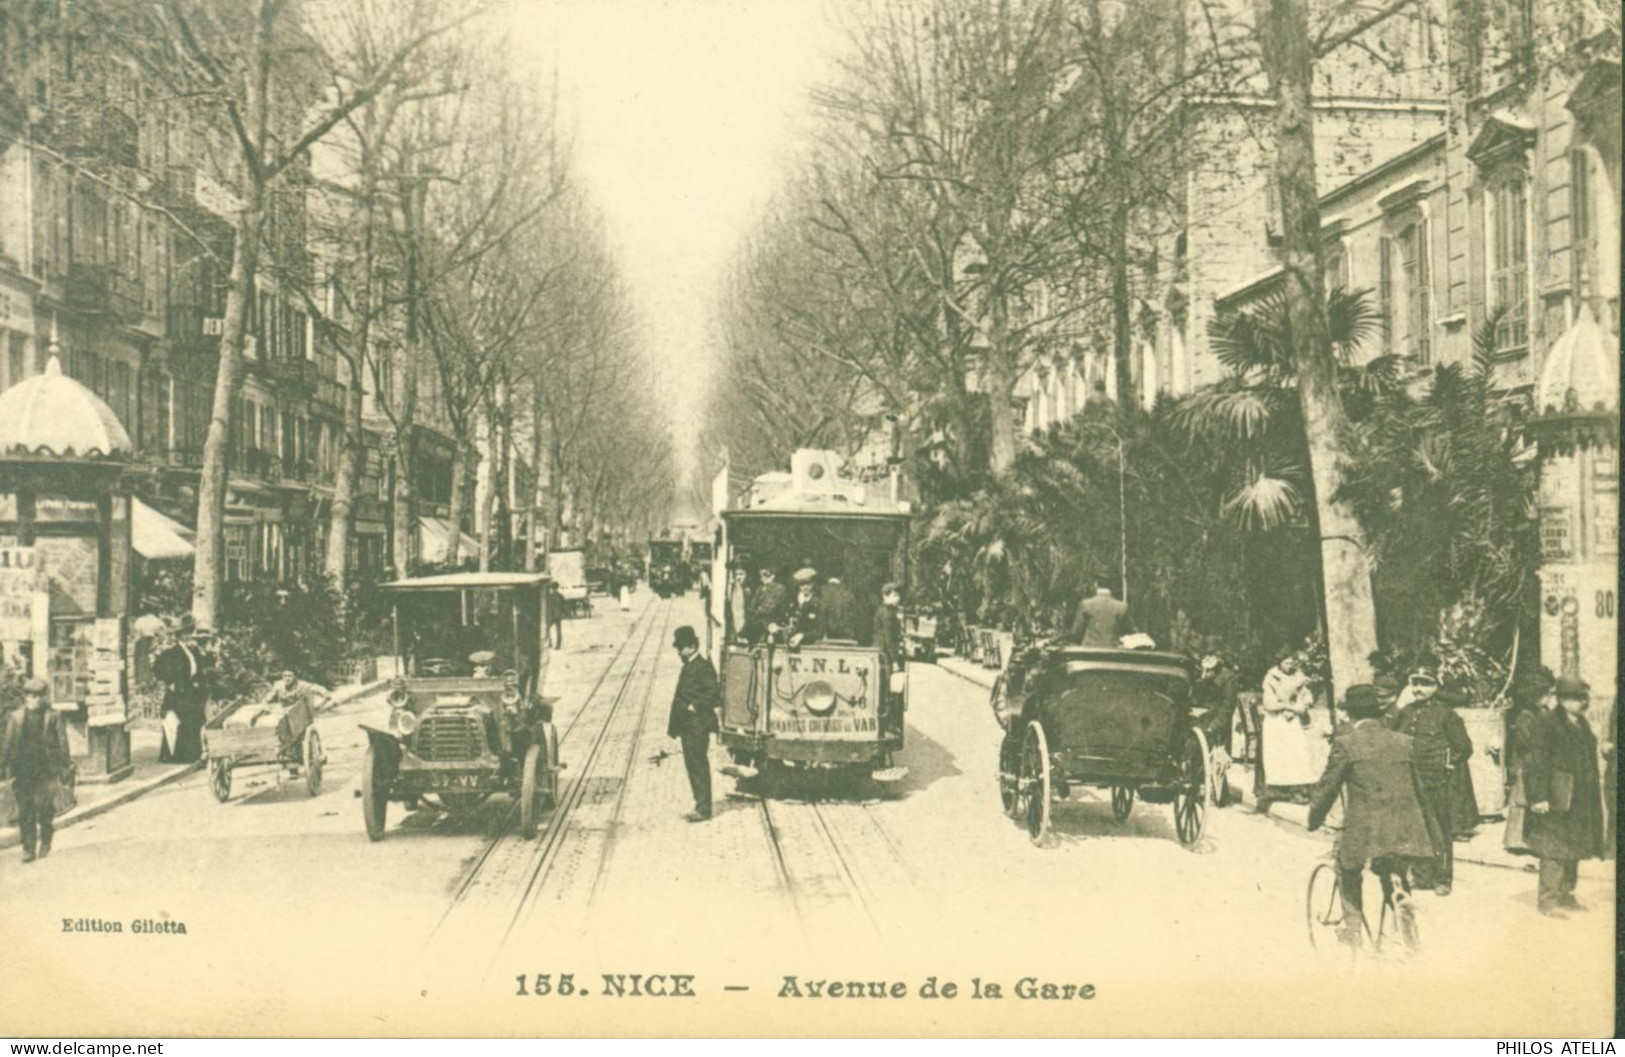 Guerre 14 Cachet Hôpital Militaire Temporaire De L'Hôtel De Nice 1er Avril CPA Nice Avenue De La Gare - 1. Weltkrieg 1914-1918